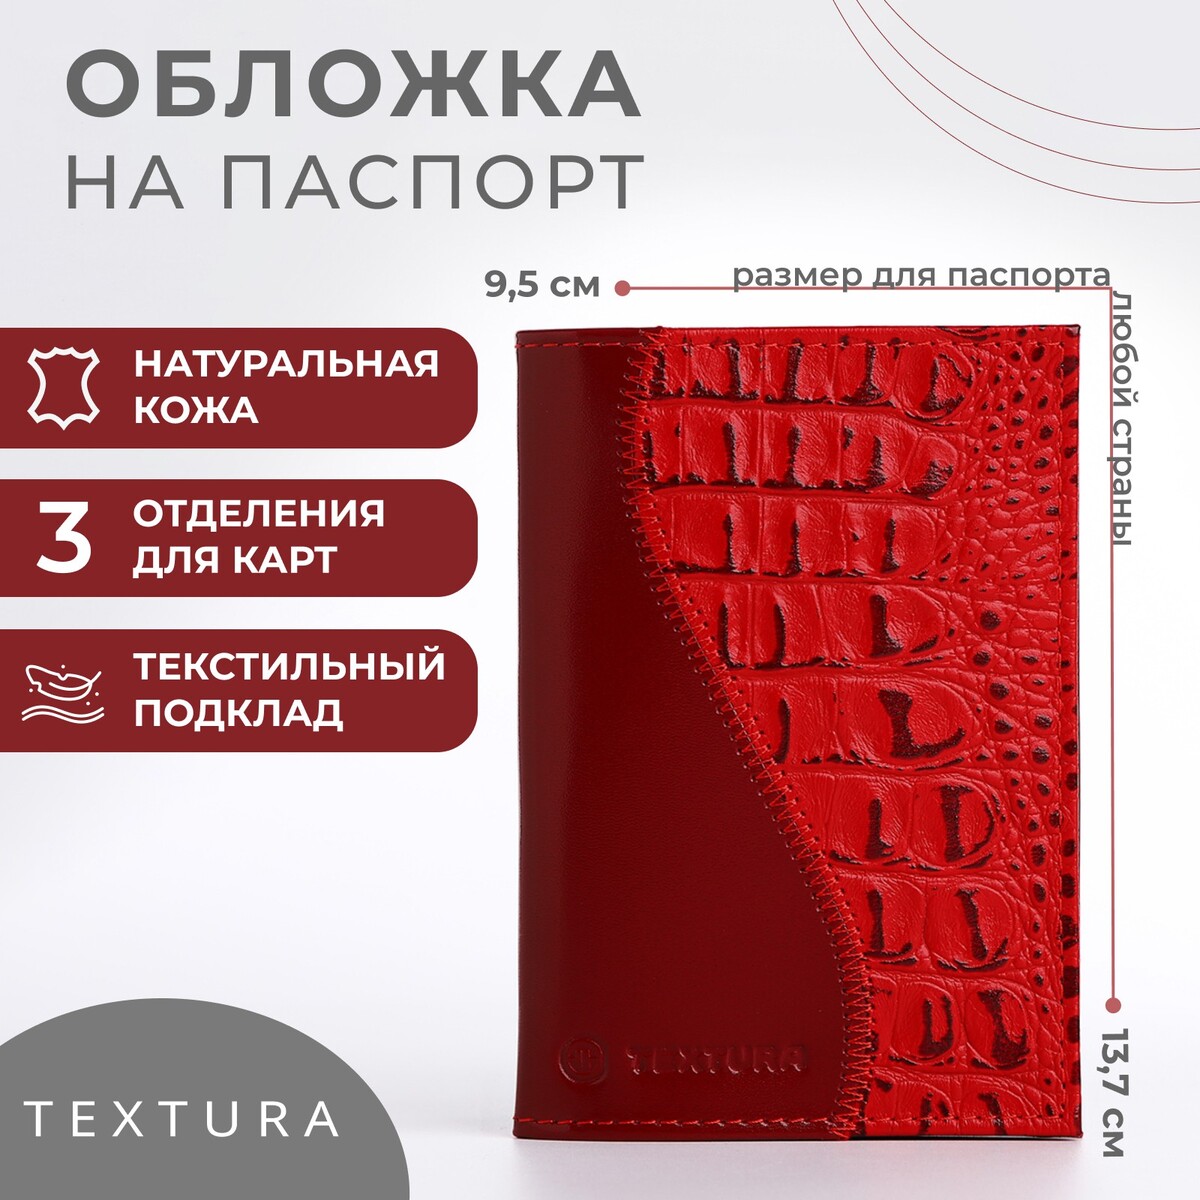 Обложка для паспорта textura, цвет красный обложка для паспорта textura